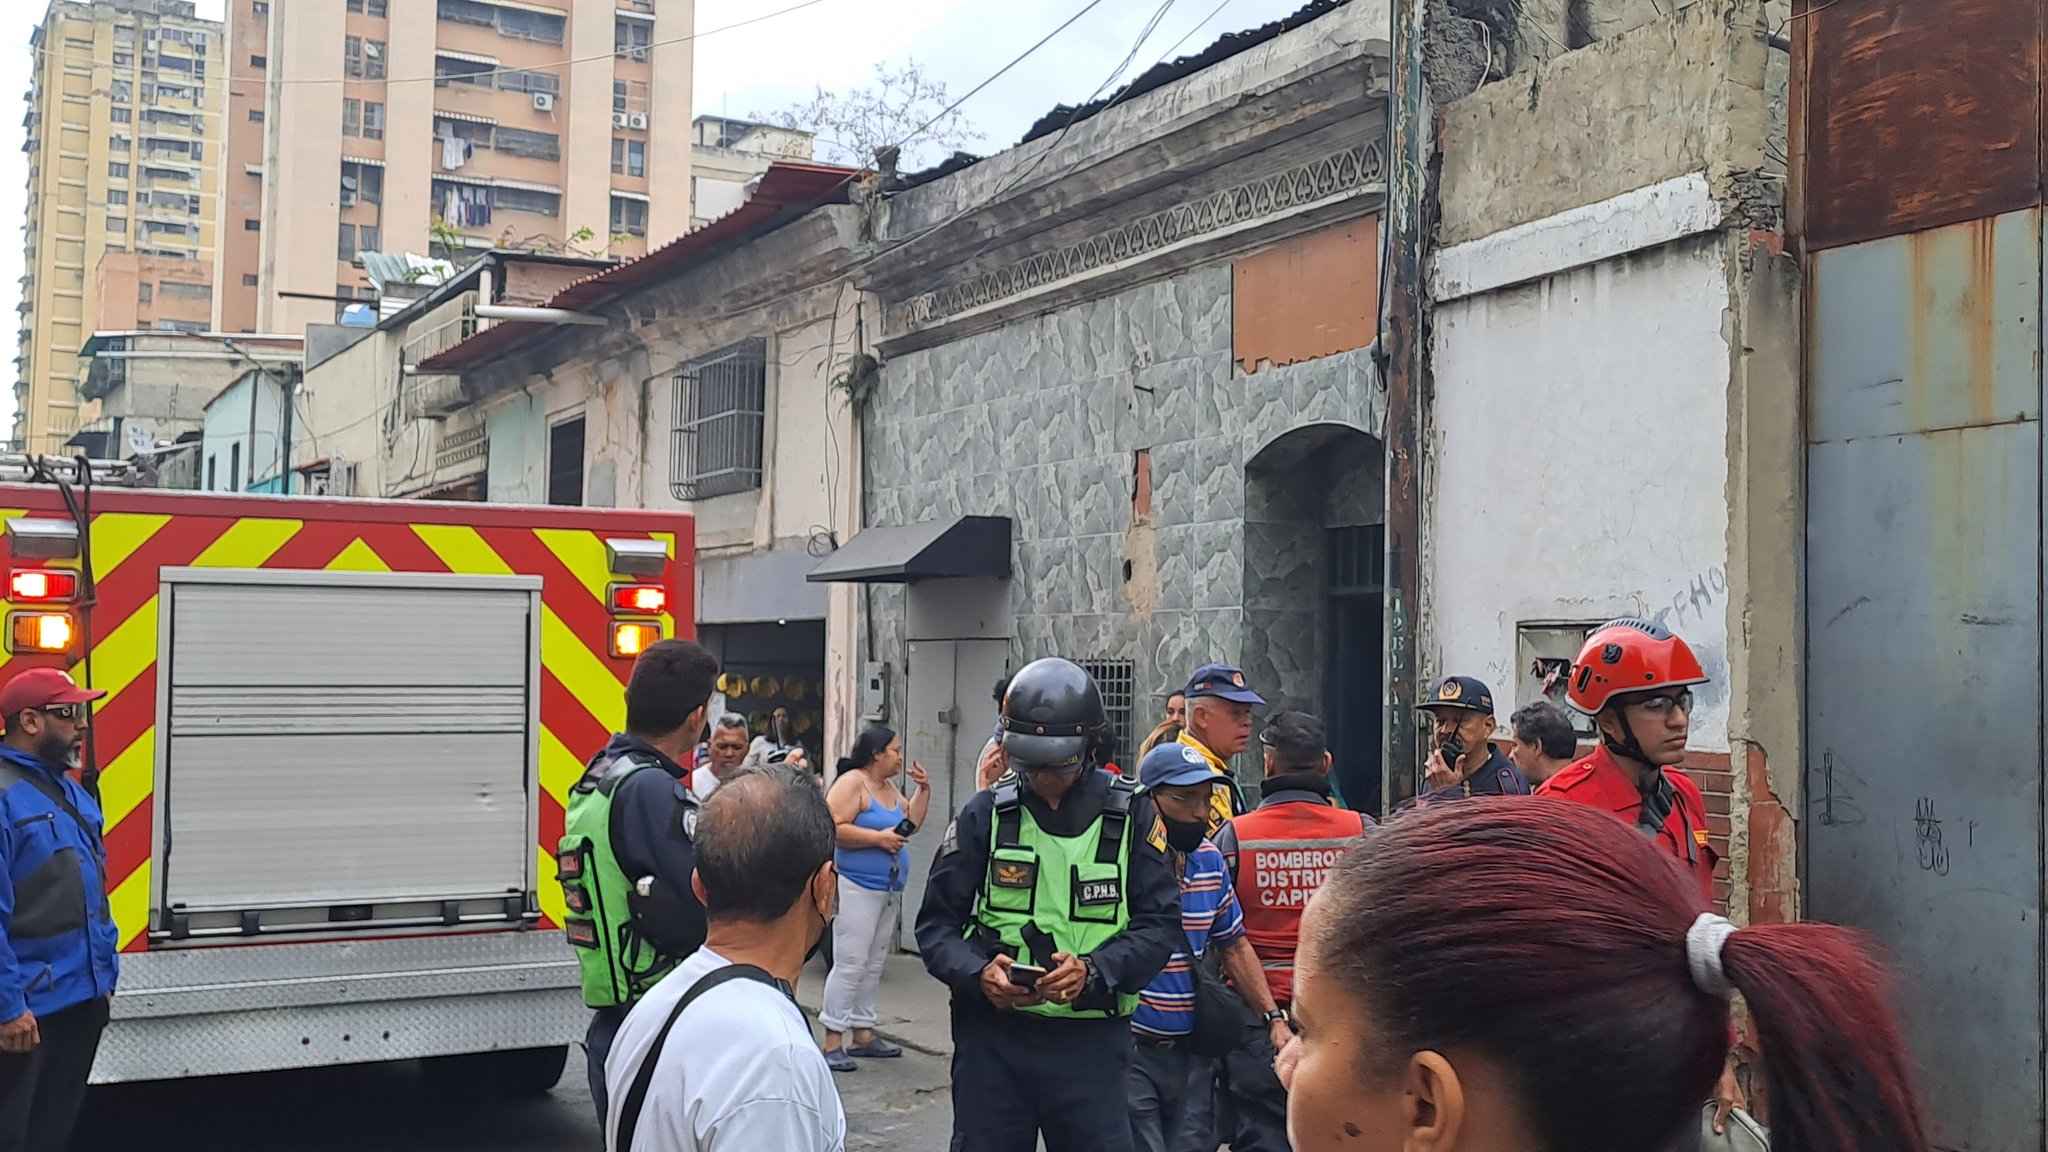 EN IMÁGENES: incendio en las pensiones cercanas a la esquina Albañales en el centro de Caracas este #10Feb